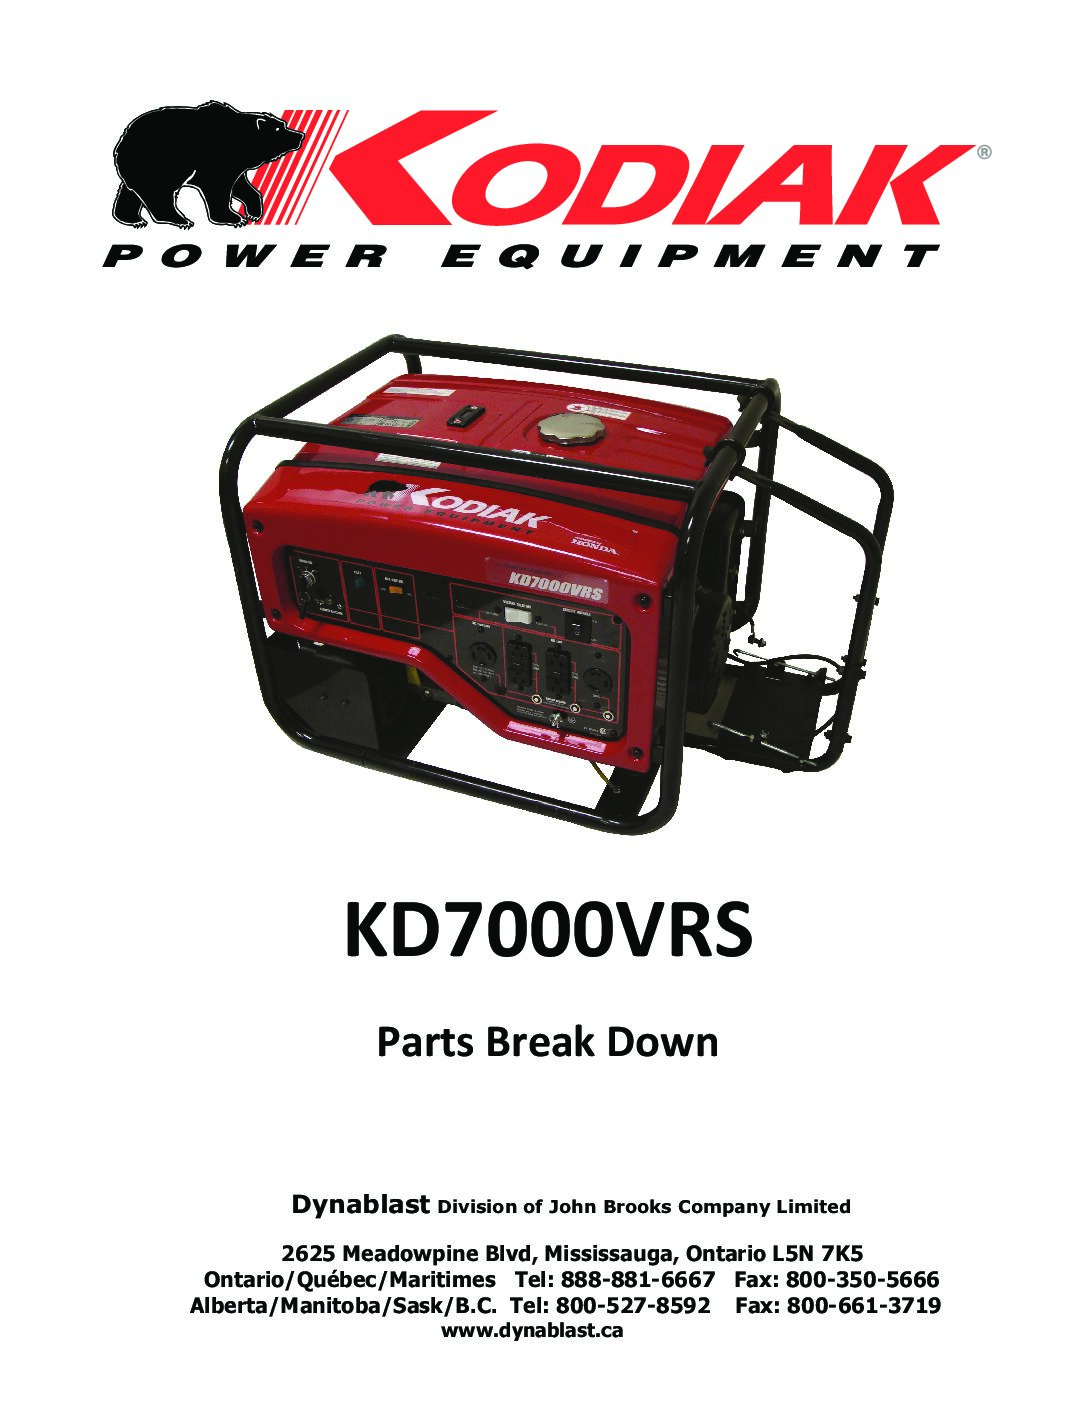 KD7000VRS Generator Parts Breakdown